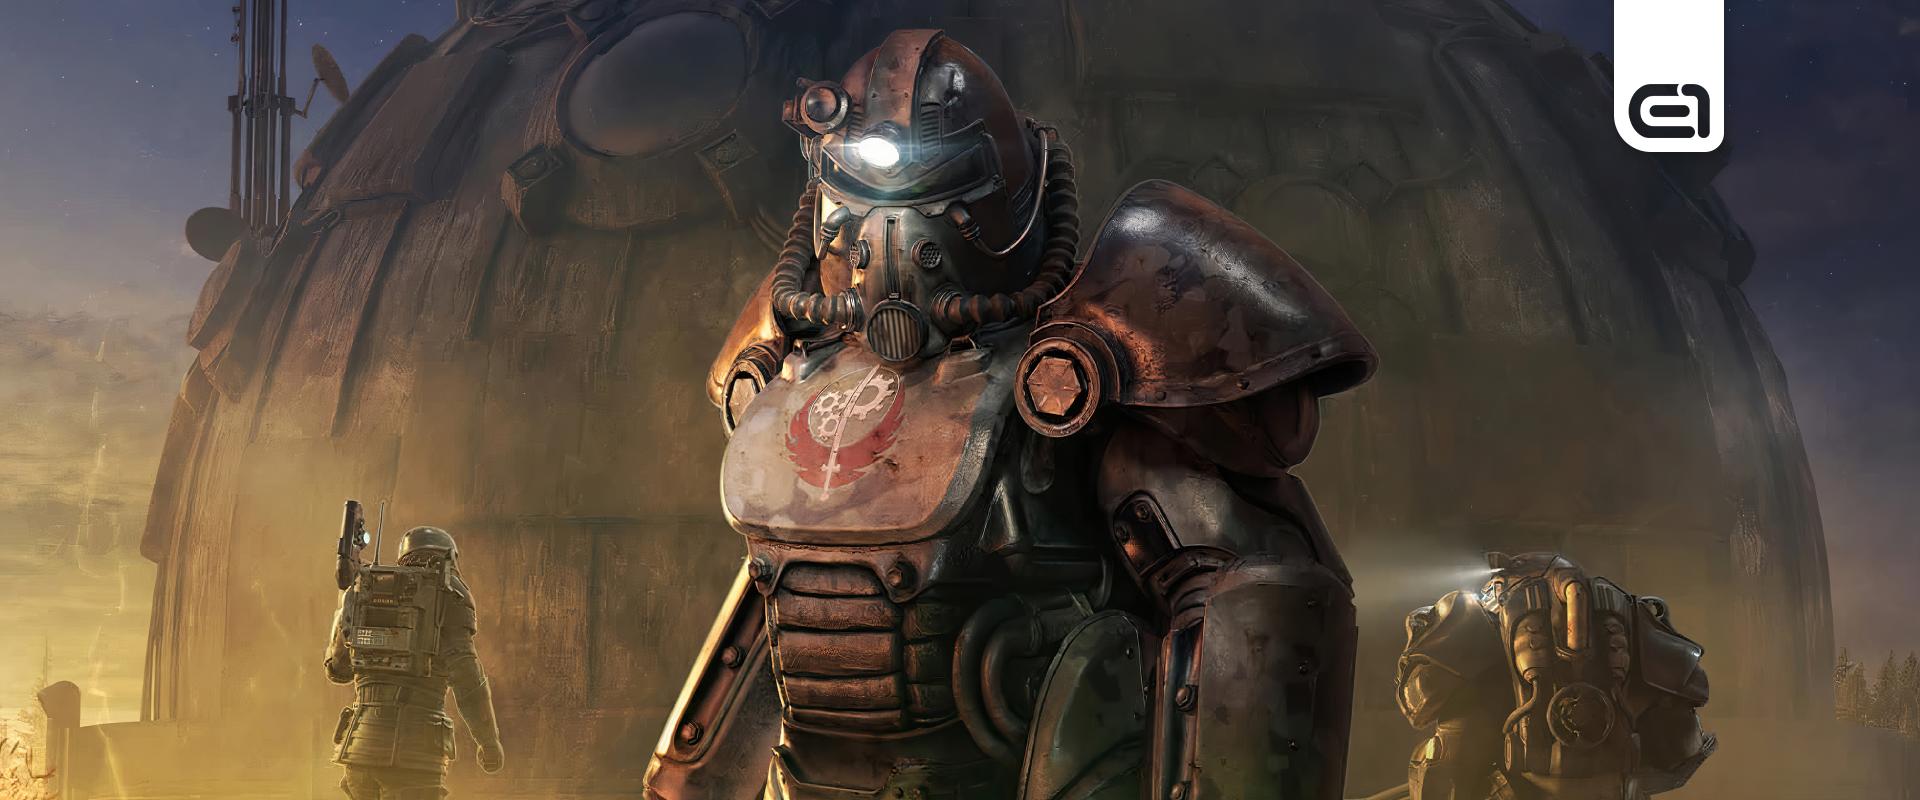 Ghoulként is lehet majd játszani a legújabb Falloutban